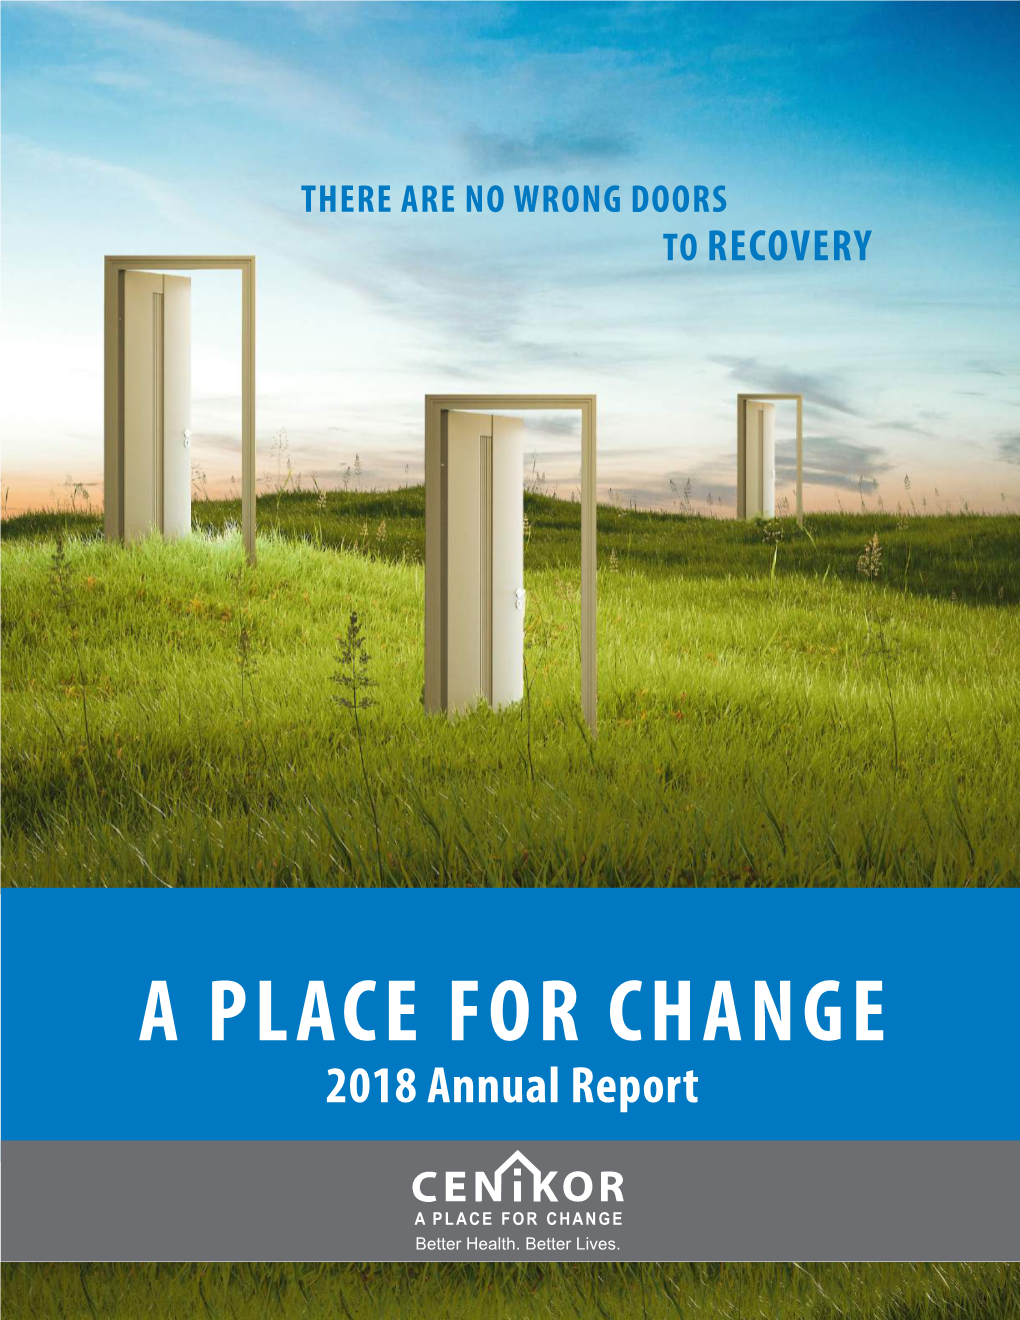 Cenikor's 2018 Annual Report